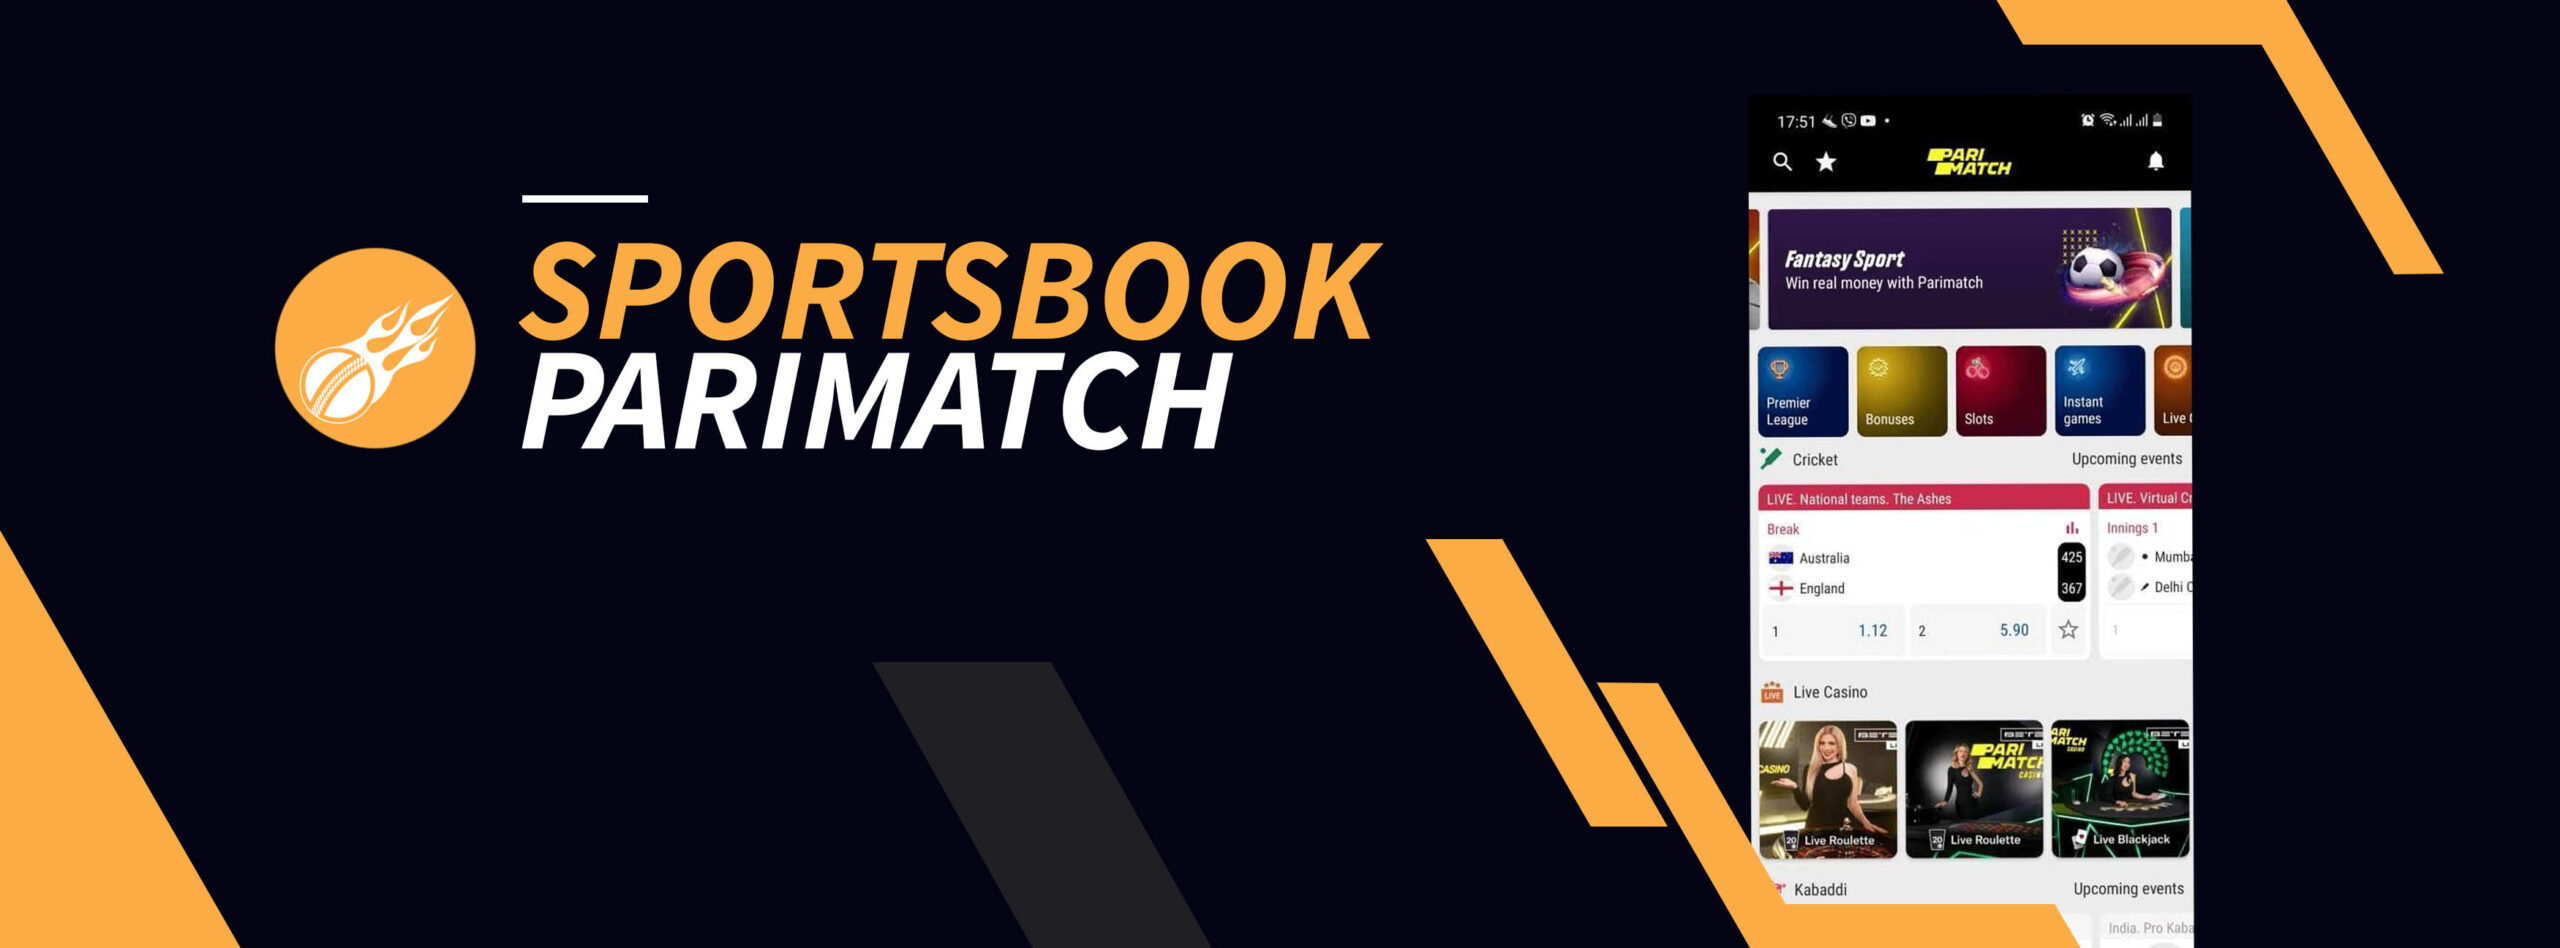 parimatch sportsbook